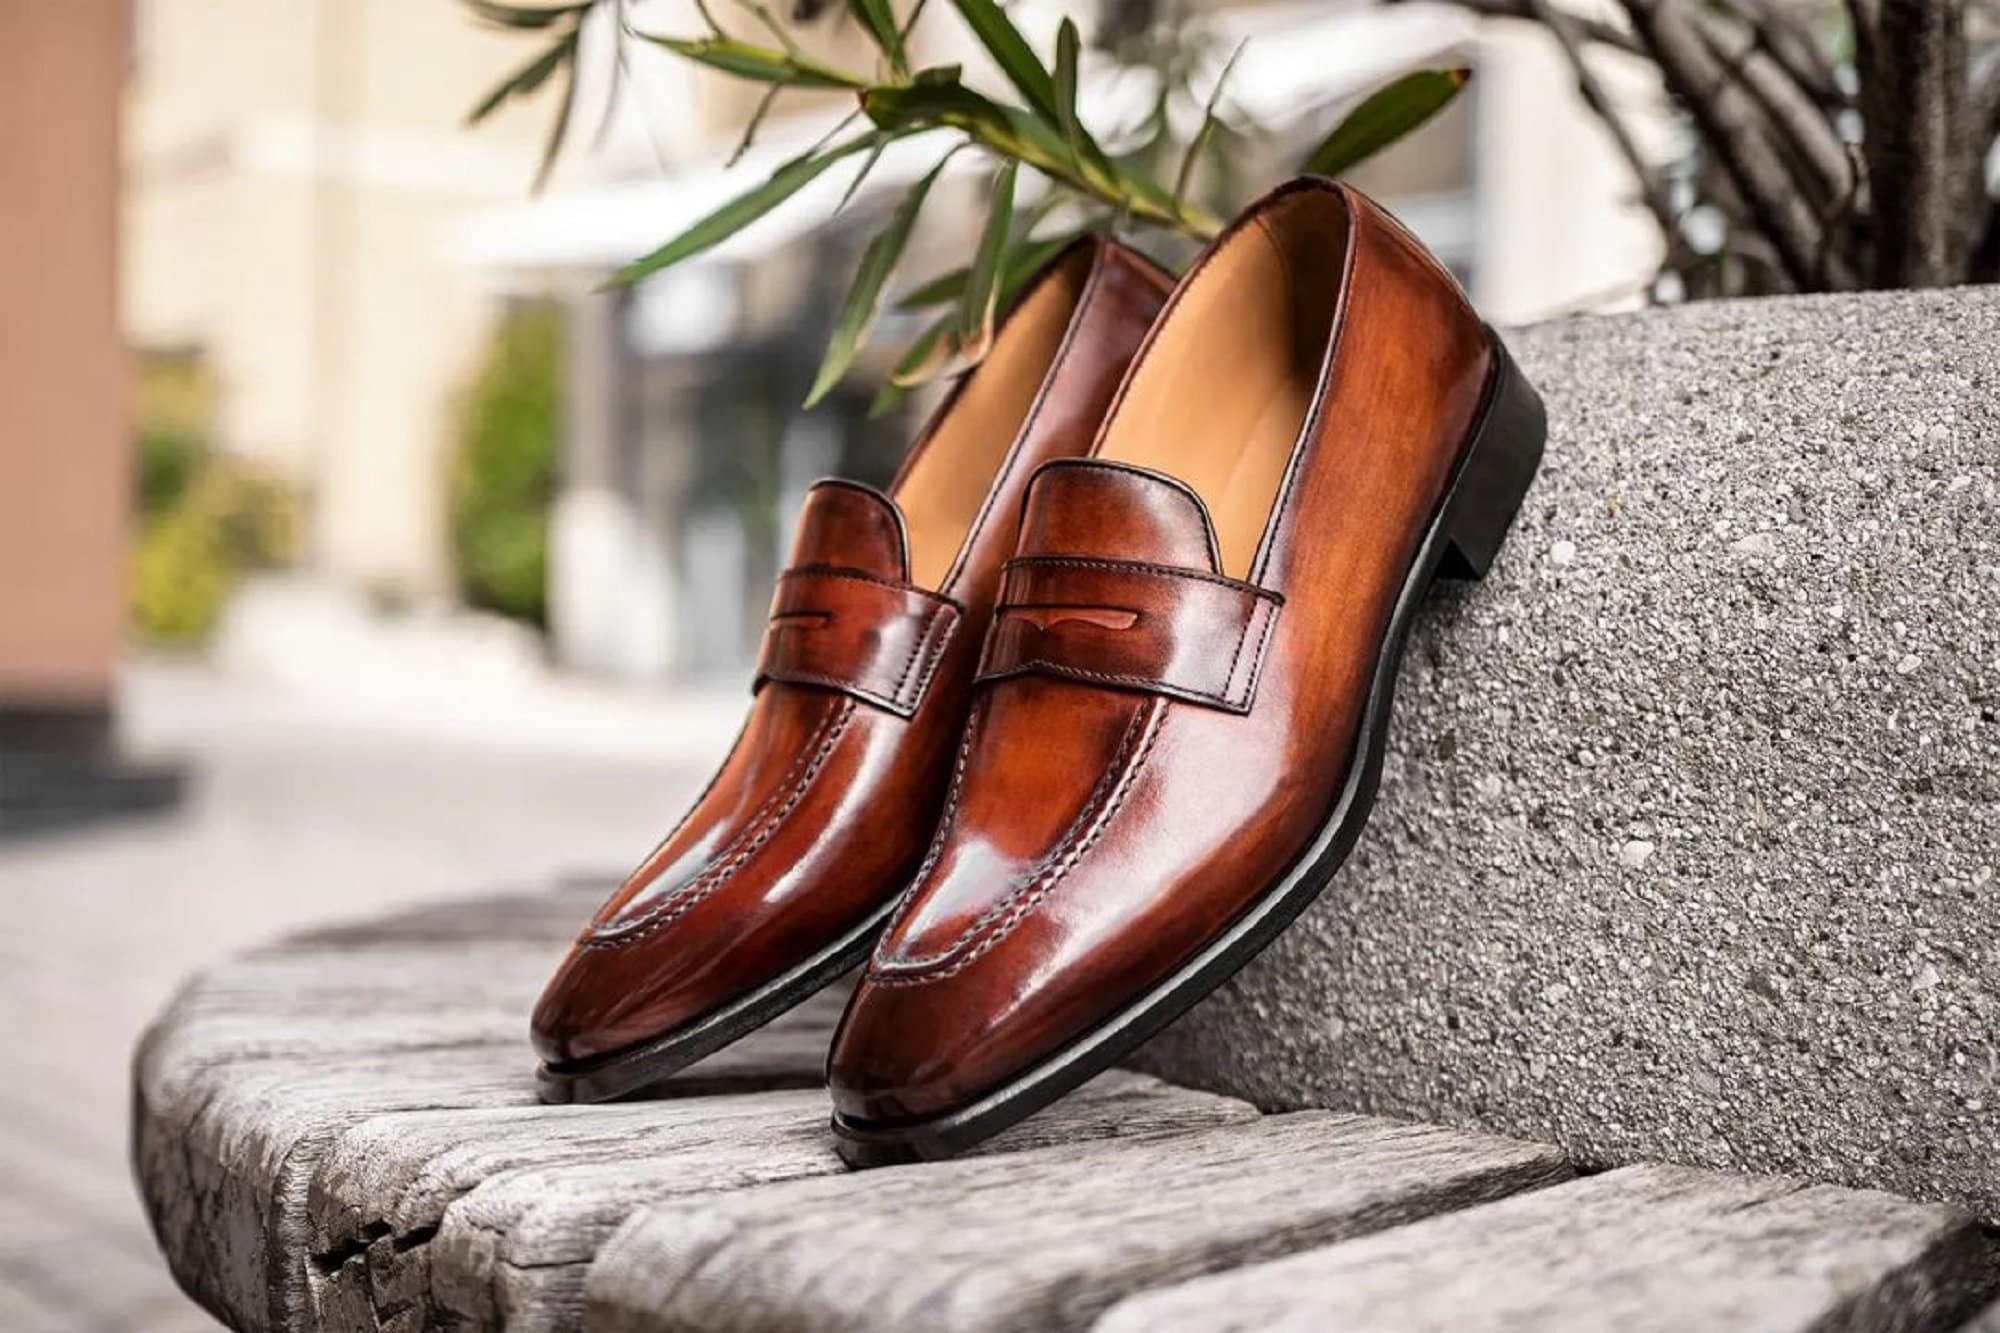 Handmade Leather Brown Loafer Shoes For Men's, Men Moccasin Shoes, Slip on Shoes For Men's, Gift Fotr Him